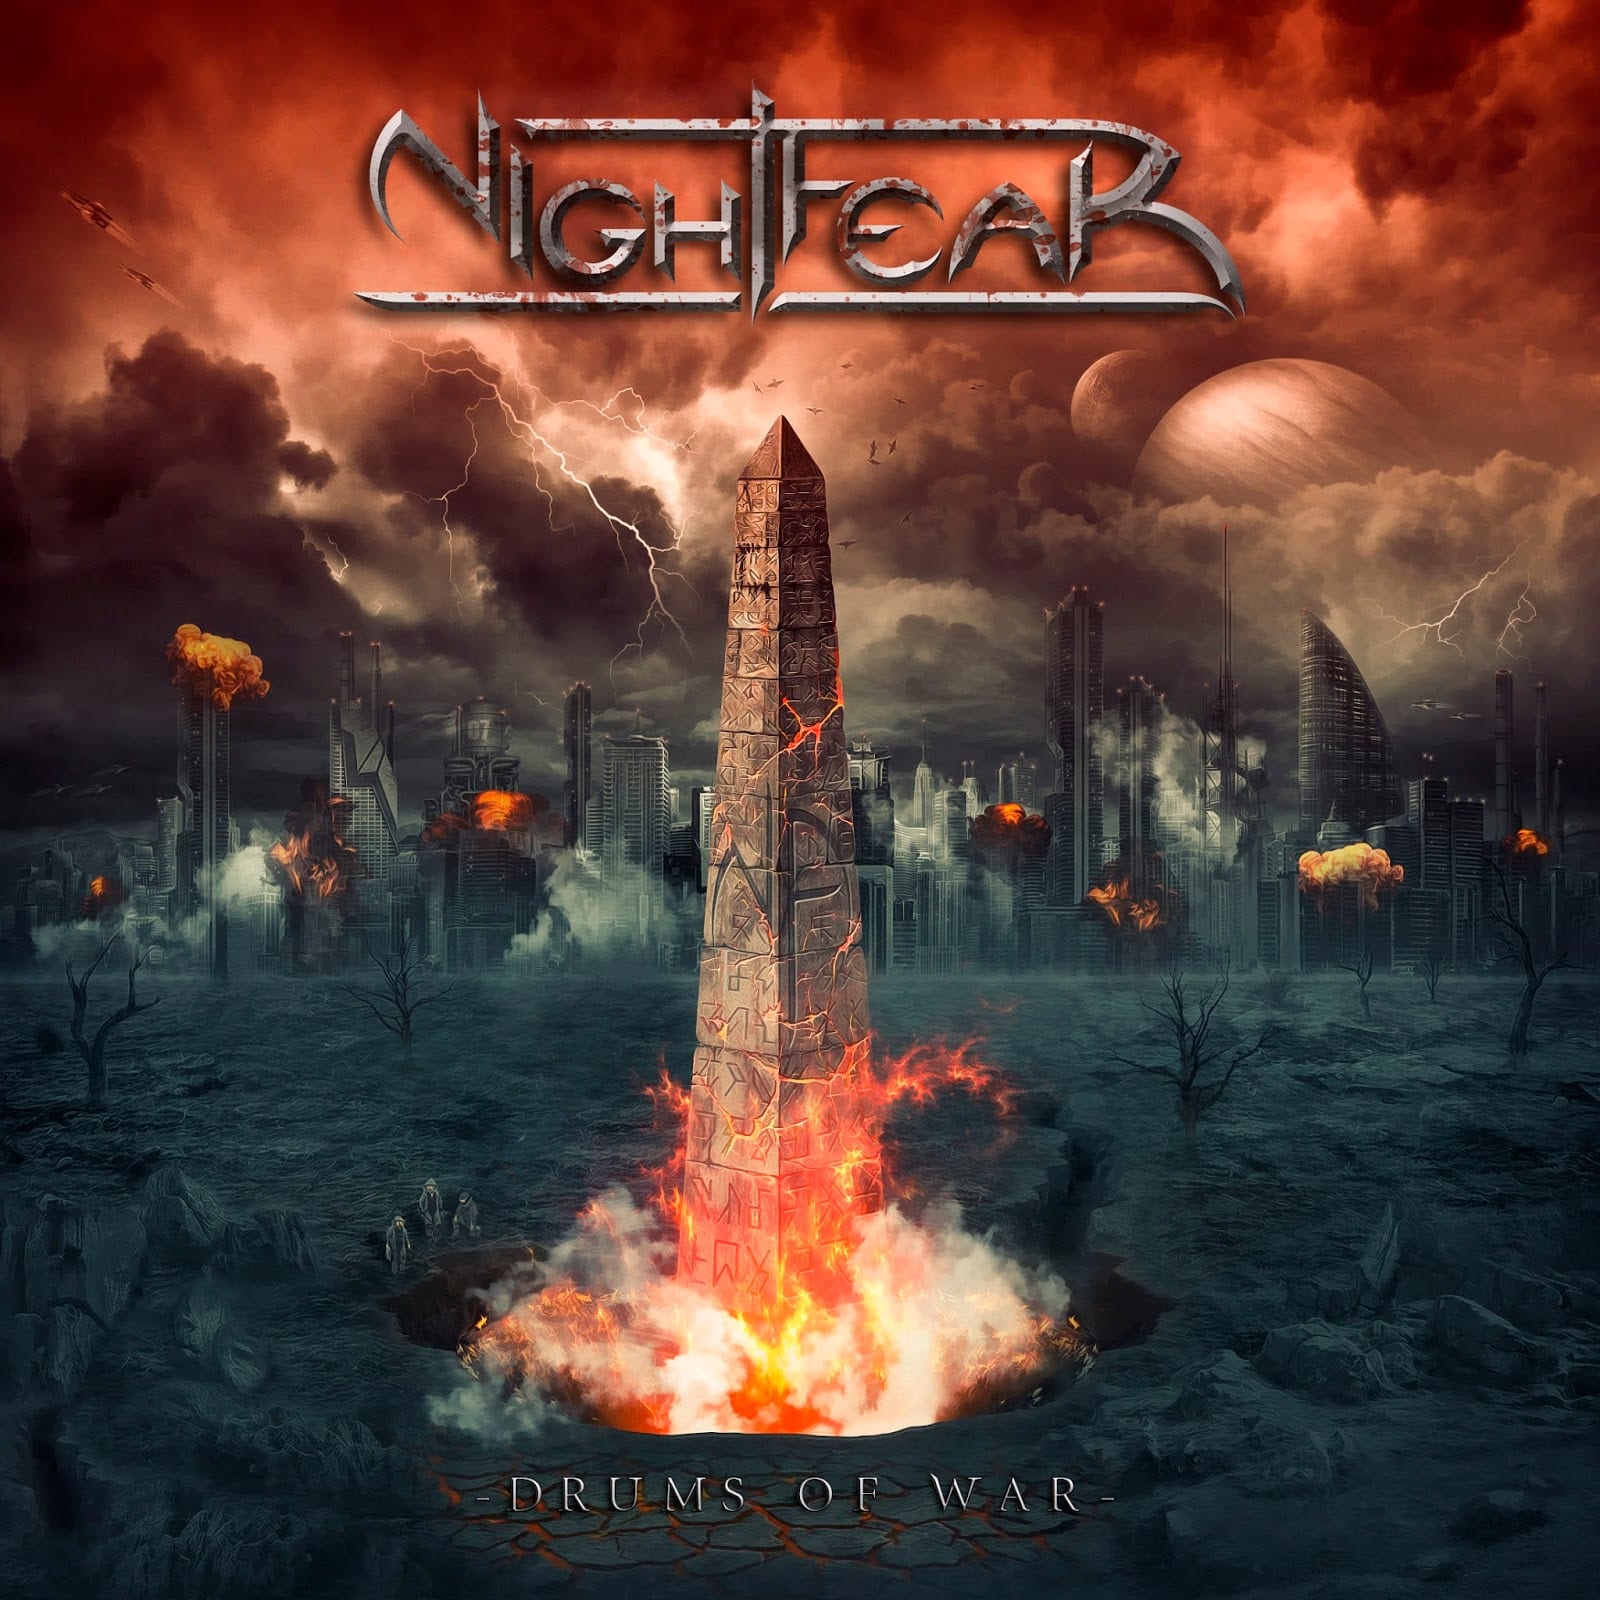 NIGHTFEAR – Drums of war